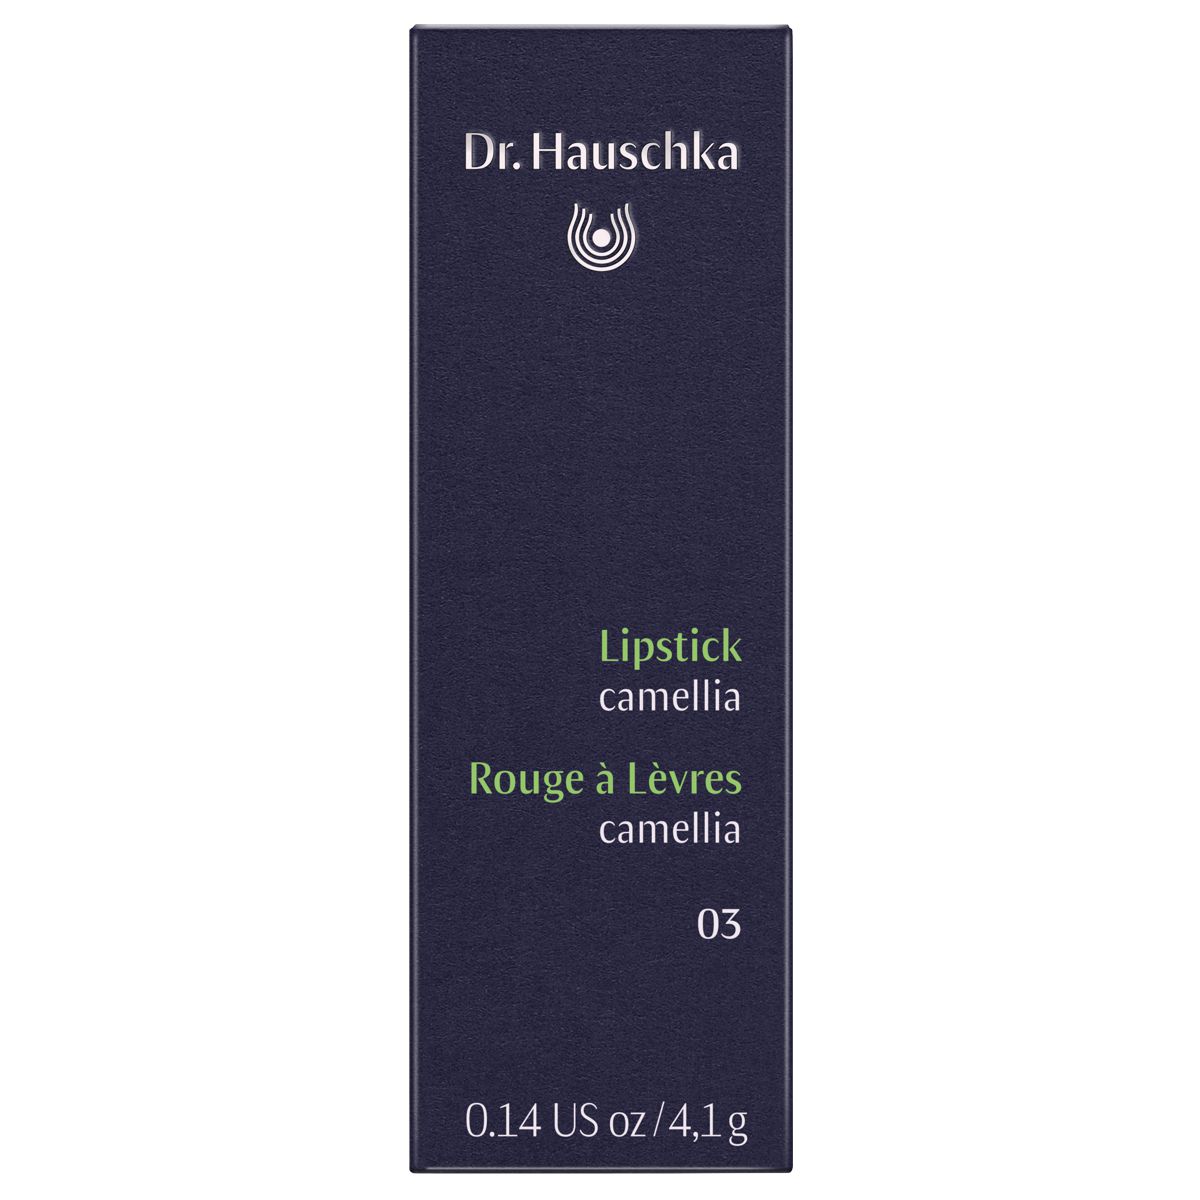 Dr_Hauschka_Lipstick_03_camellia_online_kaufen